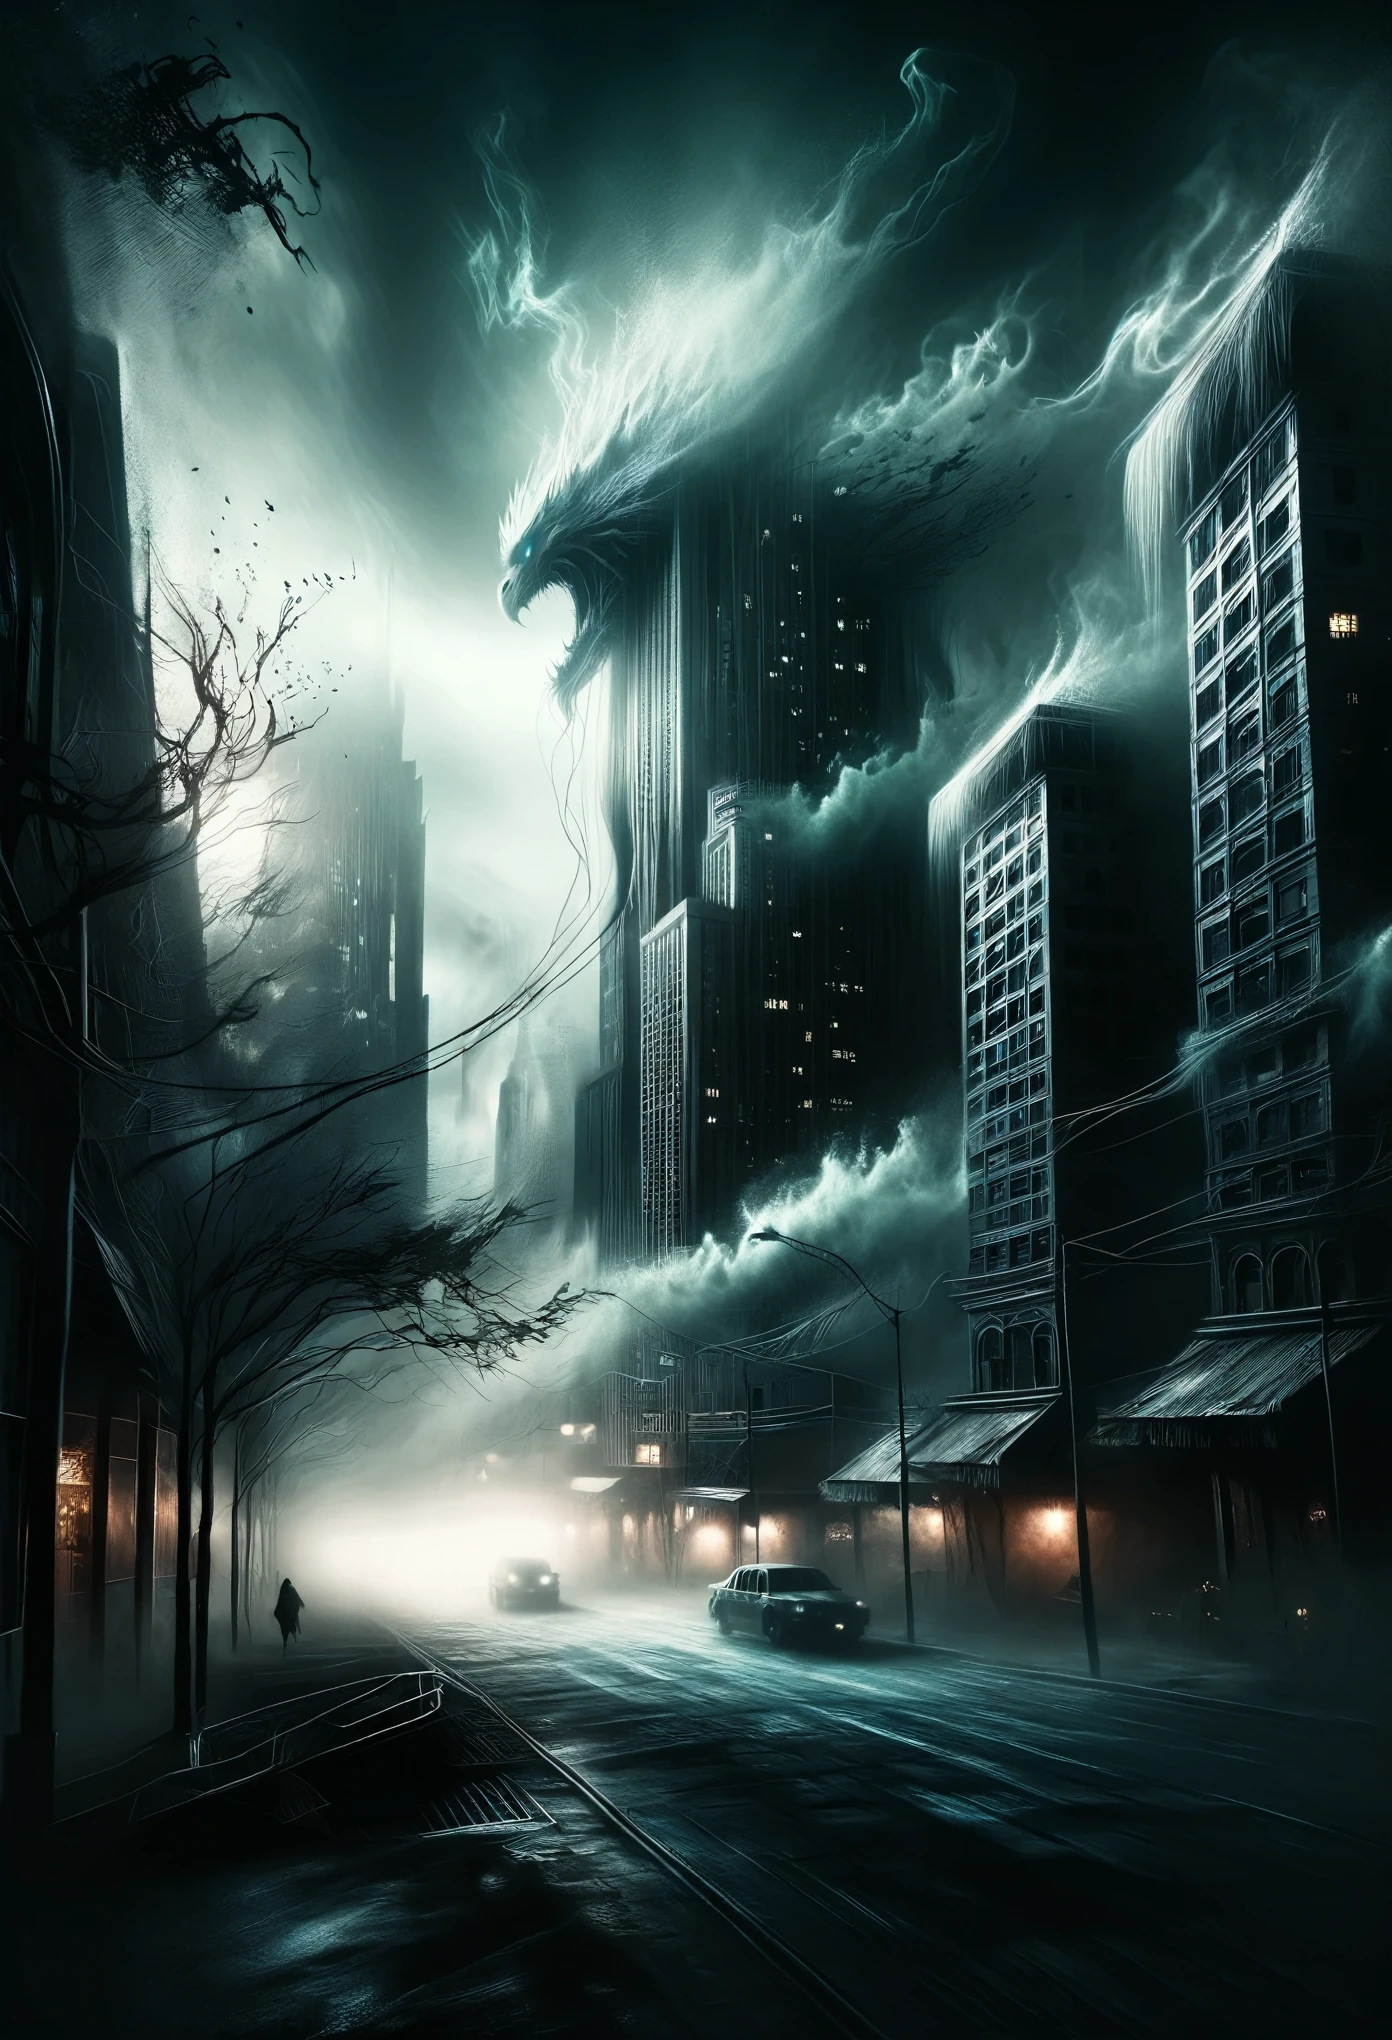 阴森恐怖的阴影笼罩下的反乌托邦城市景观, 高耸的建筑像怪物一样扭曲变形, 它们的阴险光芒营造出一种令人不安的氛围.